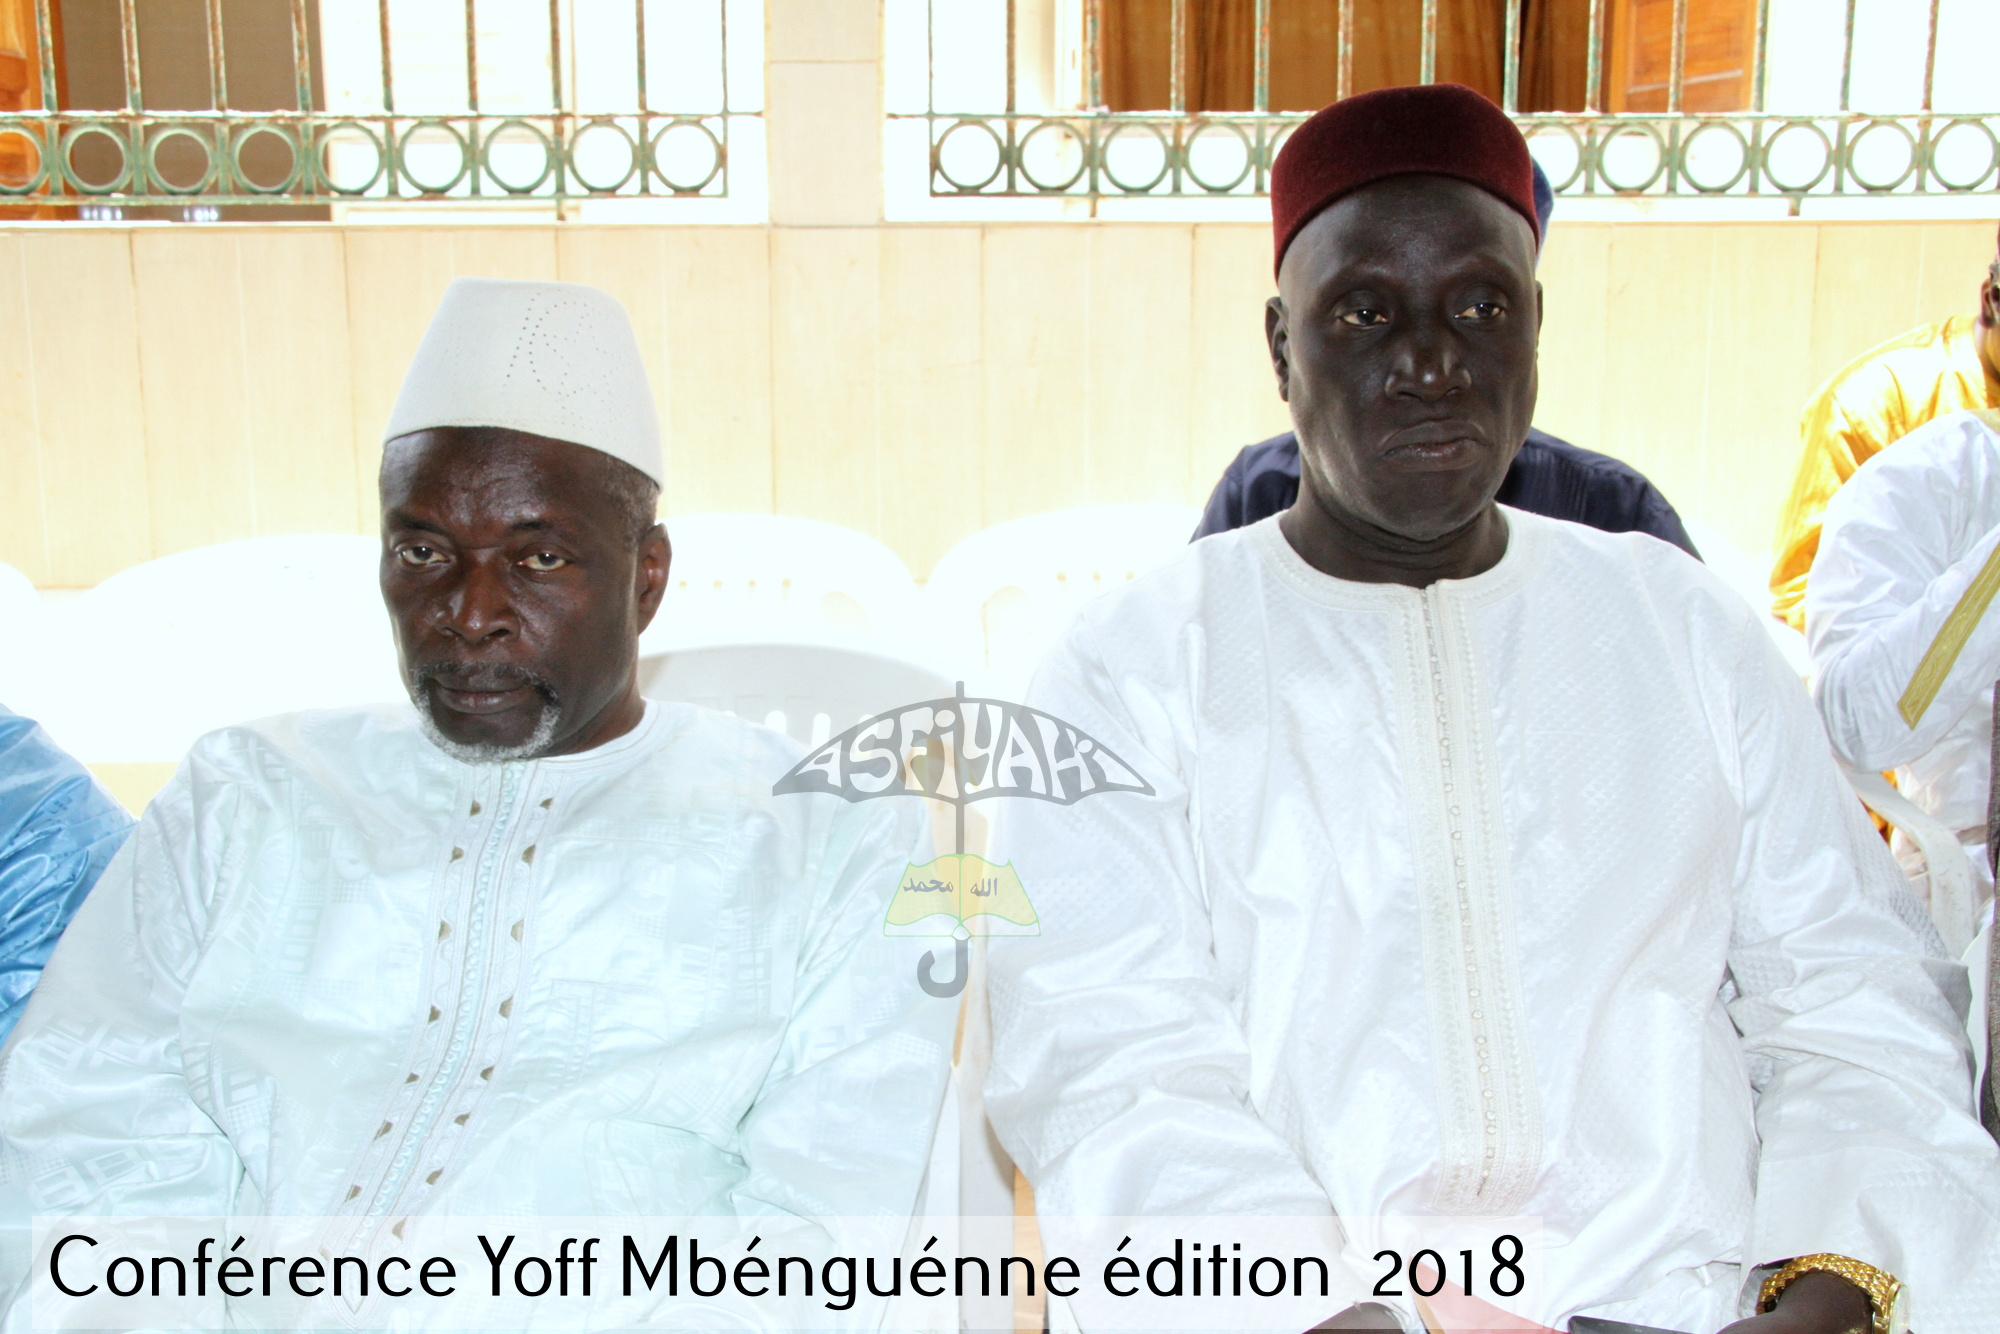 PHOTOS - YOFF MBENGUENE - Les Images de la Conférence Annuelle edition 2018 du Mouvement Tidiane de Concertation et d'action (MTCA) et le Mouvement d'Entraide Islamique (MEI)